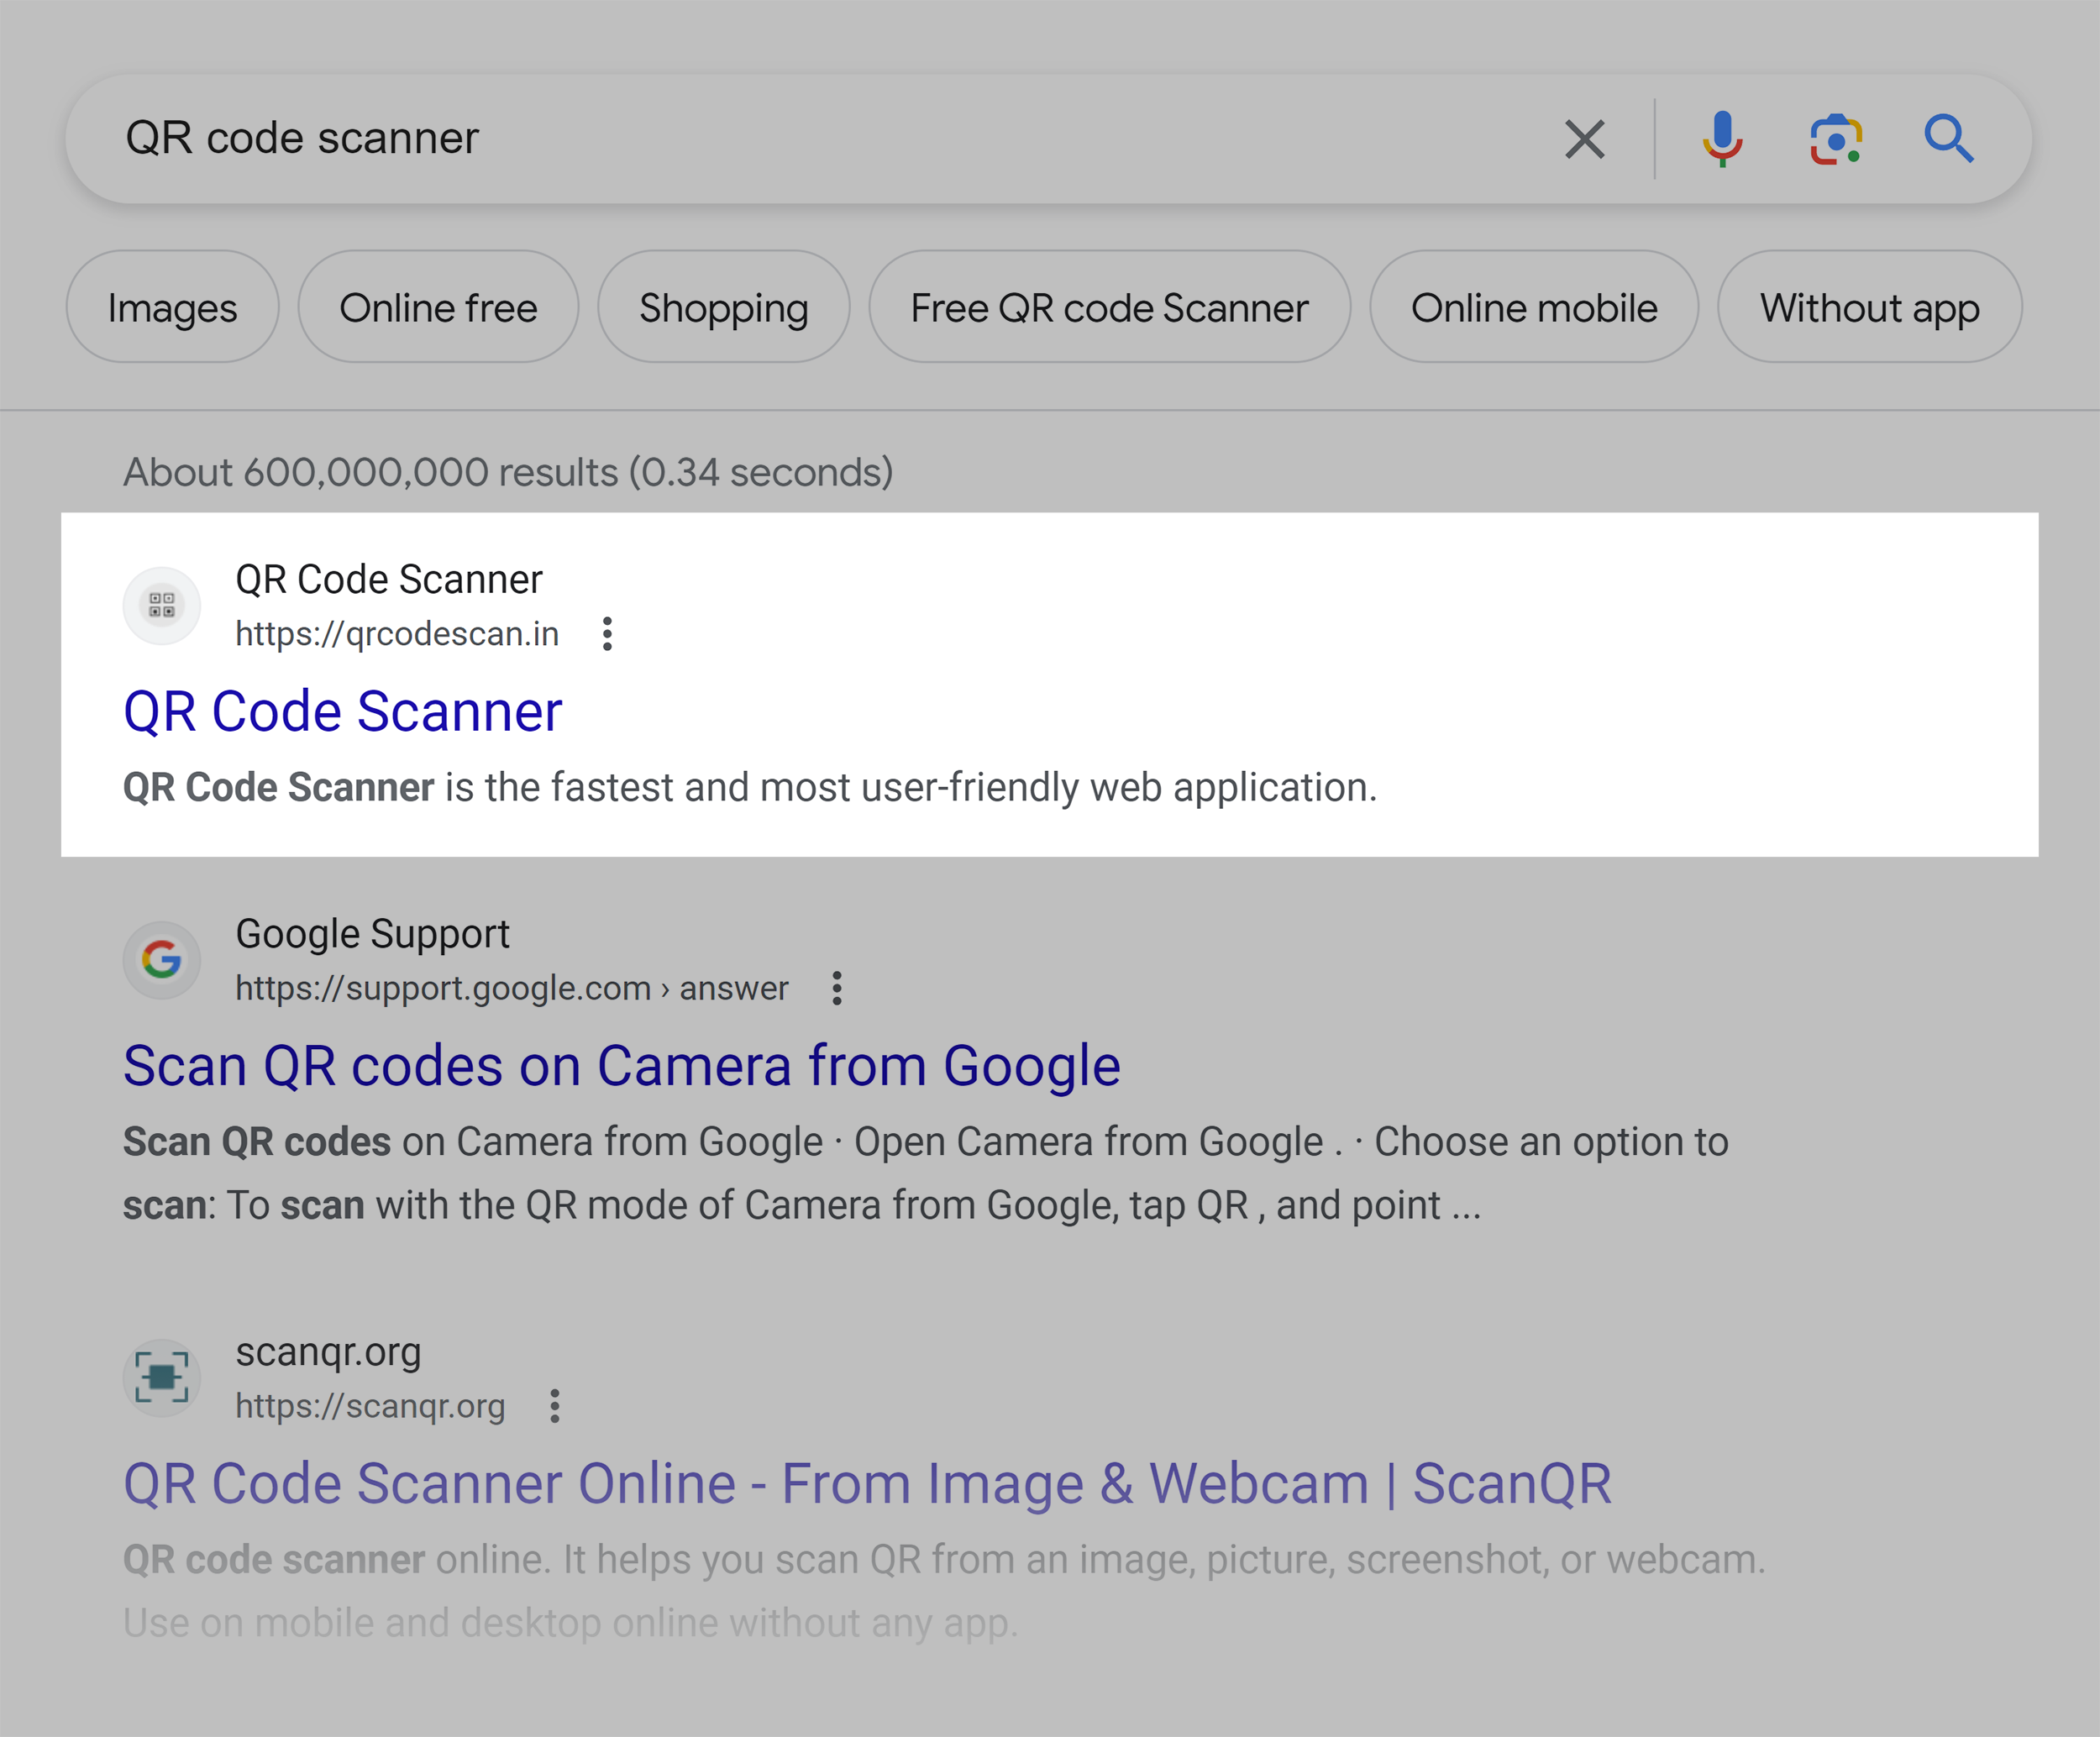 Google SERP – QR Code Scanner